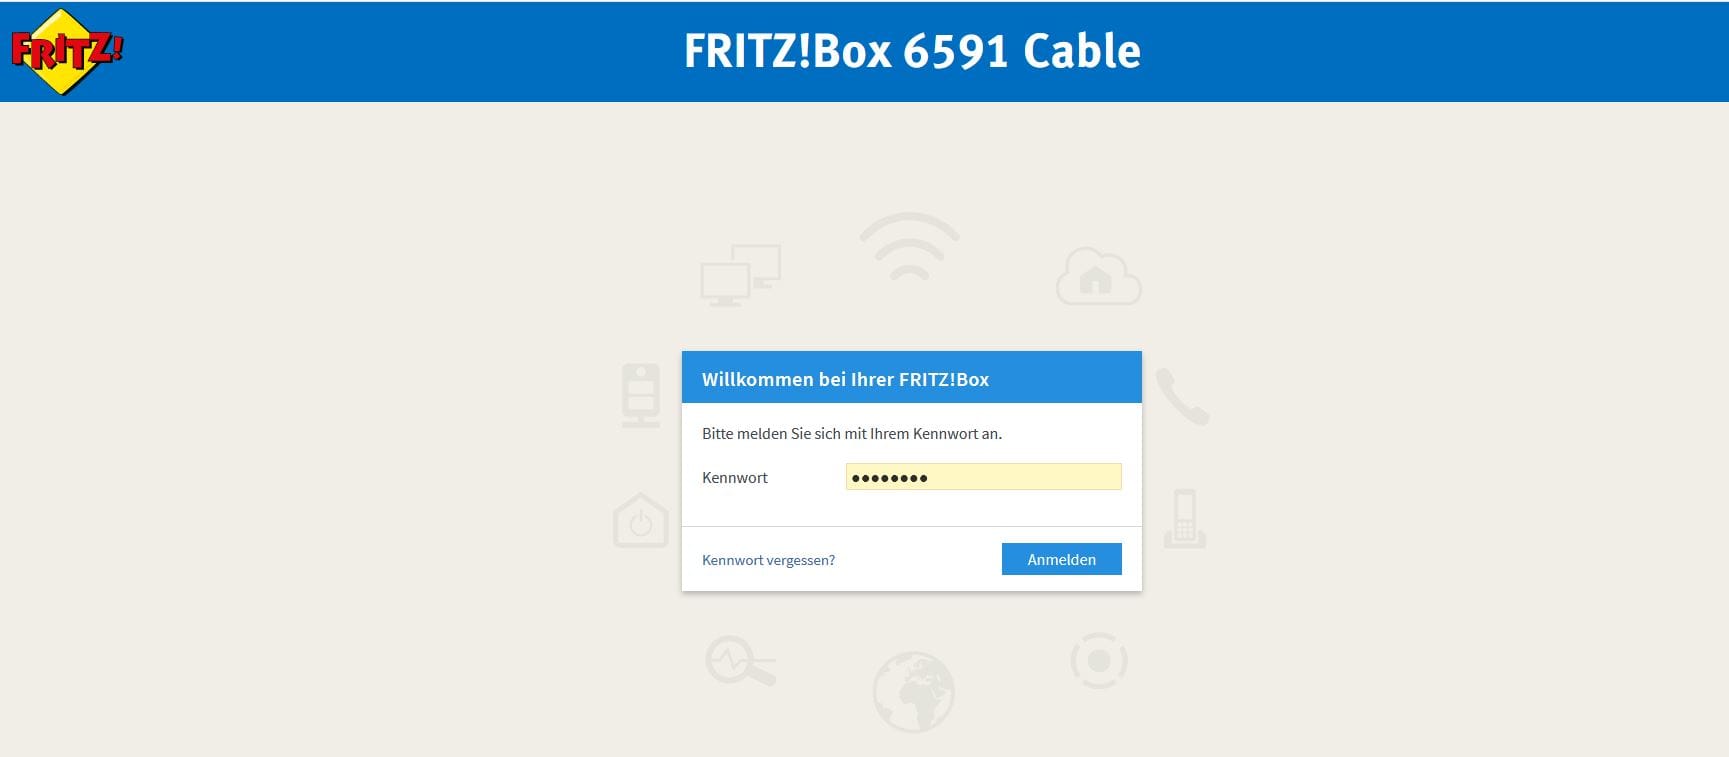 Wenn Sie einen externen Speicher mit USB 3.0 in Ihre Fritzbox gesteckt haben, lohnt es sich zu prüfen, ob der Anschluss auch in den Power Mode geschaltet ist. Denn nur dann können Sie die schnelleren Datenübertragungsraten verwenden. Öffnen Sie dazu zuerst die Einstellungen Ihrer Fritzbox. Tippen Sie dafür in die Adresszeile 192.168.178.1 oder "http://fritz.box".